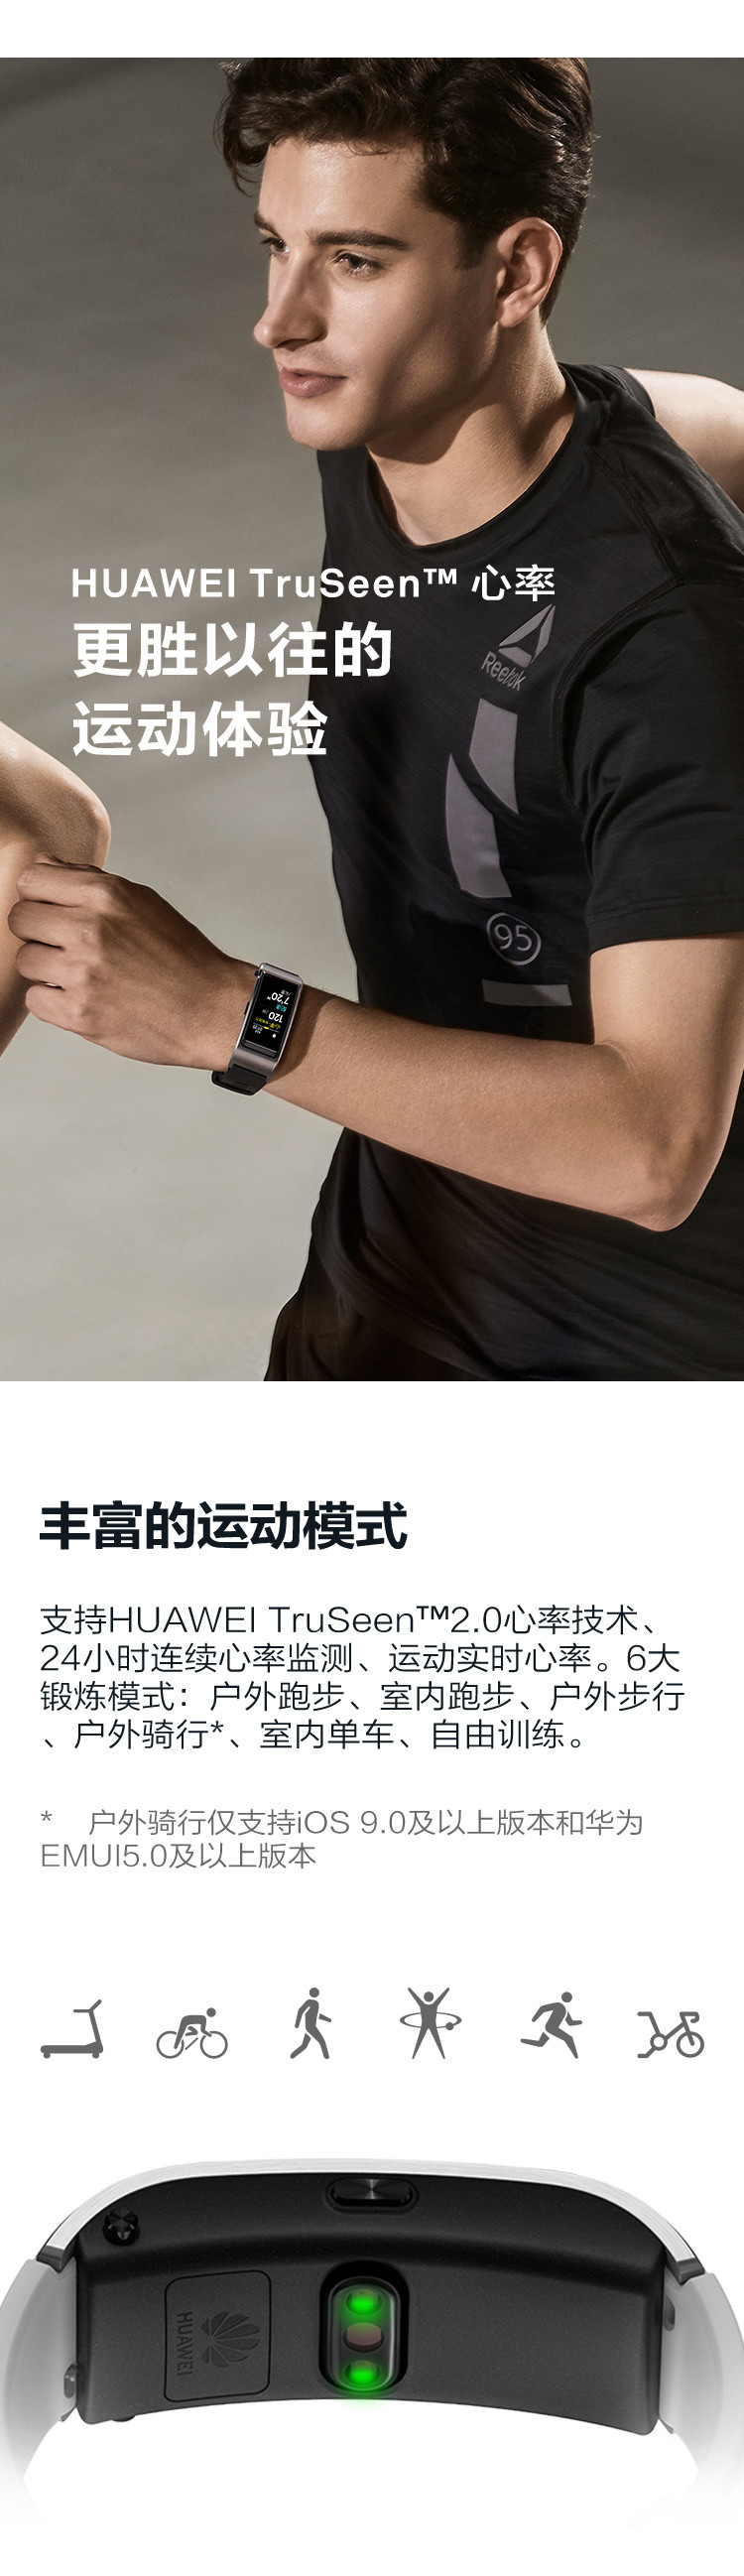 HUAWEI 华为手环 B5 蓝牙耳机+智能手环+心率监测+彩屏+触控+压力监测+运动手环